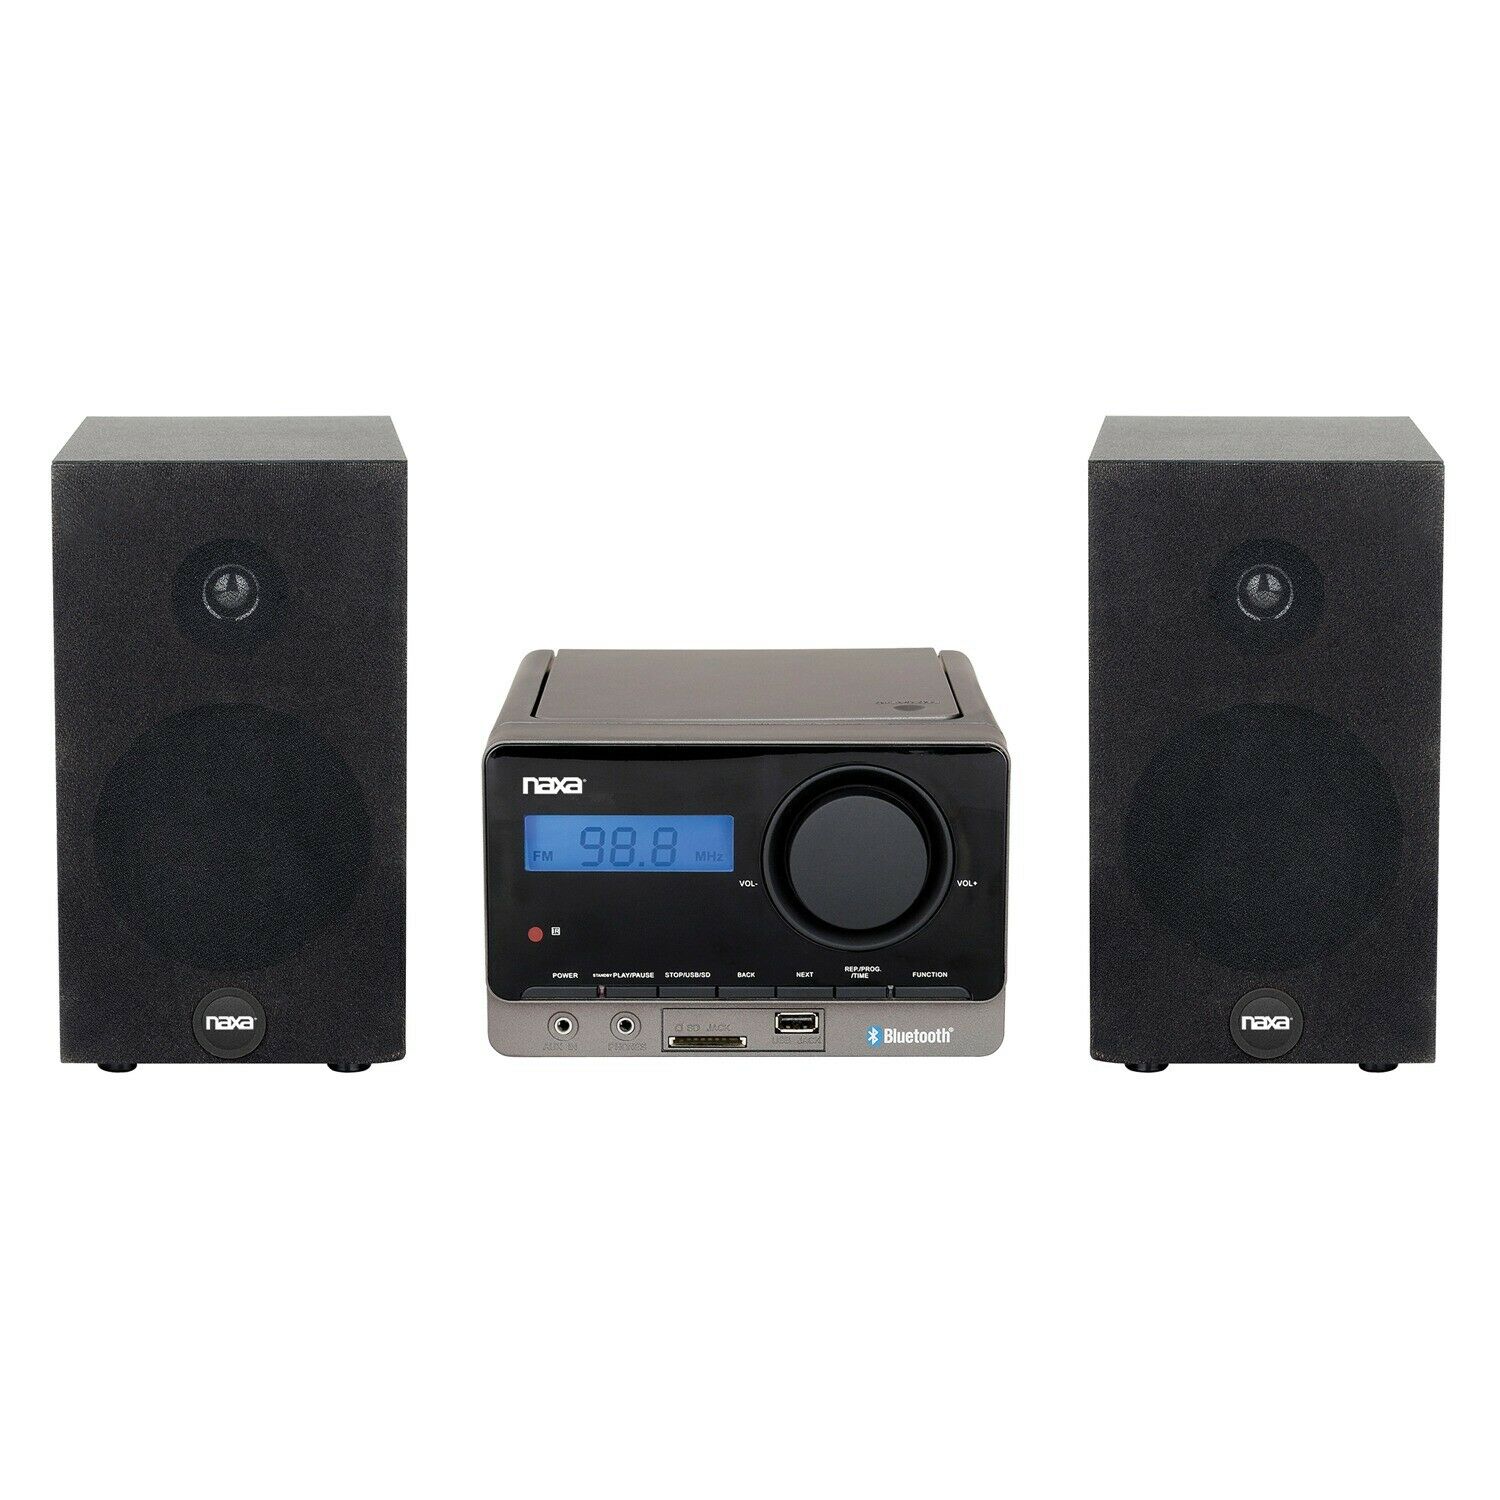 Naxa ns-442 MP3/CD Stereo Shelf System, Bluetooth, USB, AUX, Digital FM Tuner, Remote, 2x 2.5Watts Aux input, USB and SD card slot